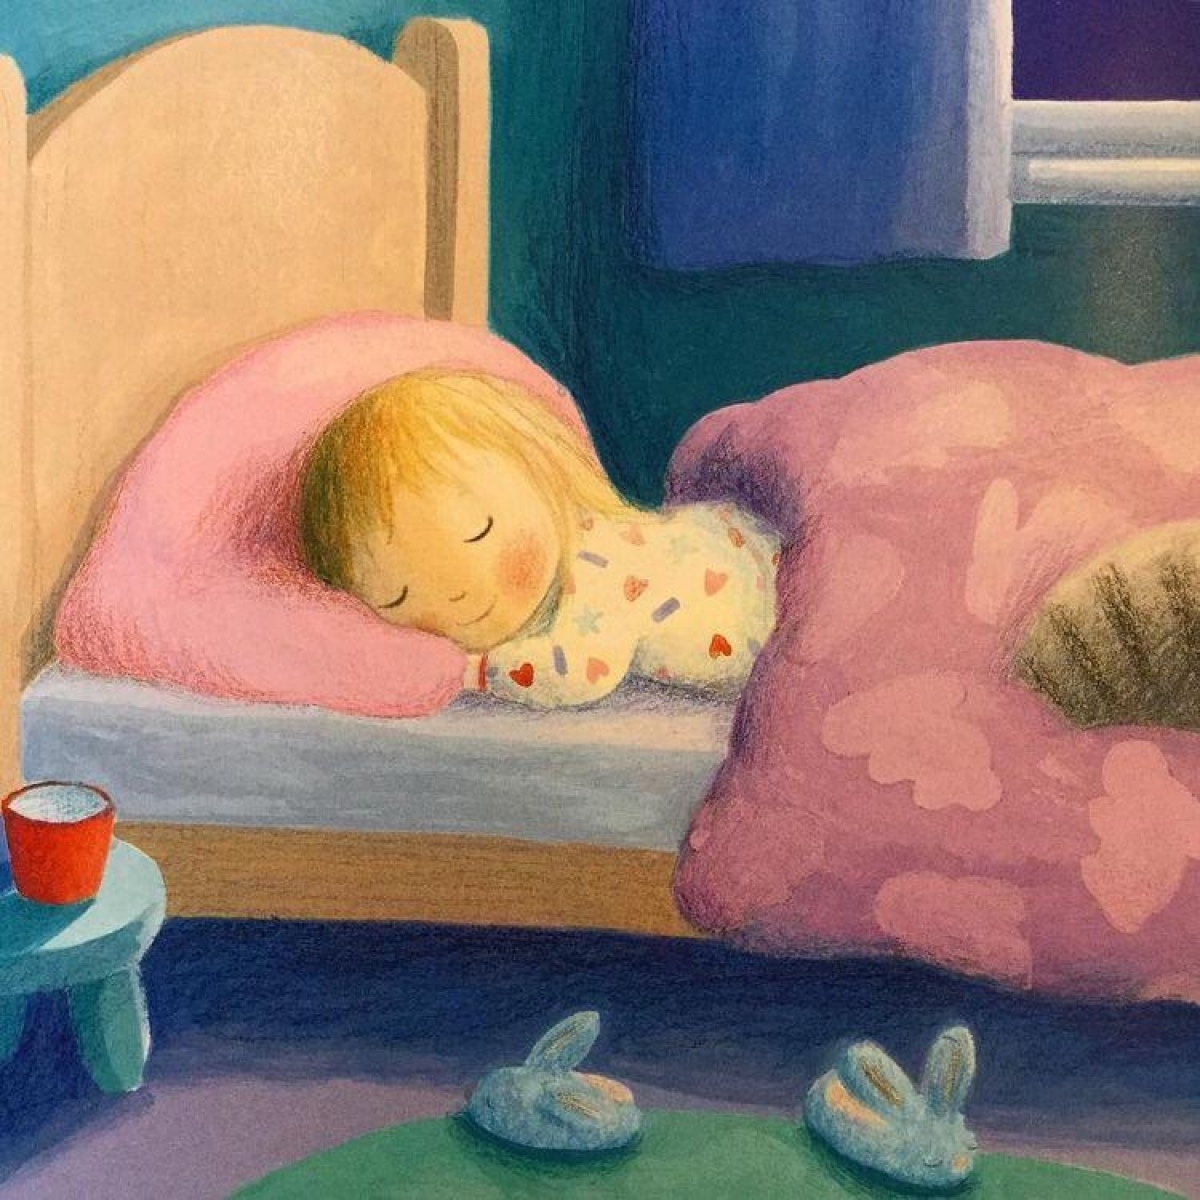 Включи спокойную детскую. Спящий ребенок. Детские иллюстрации сон.